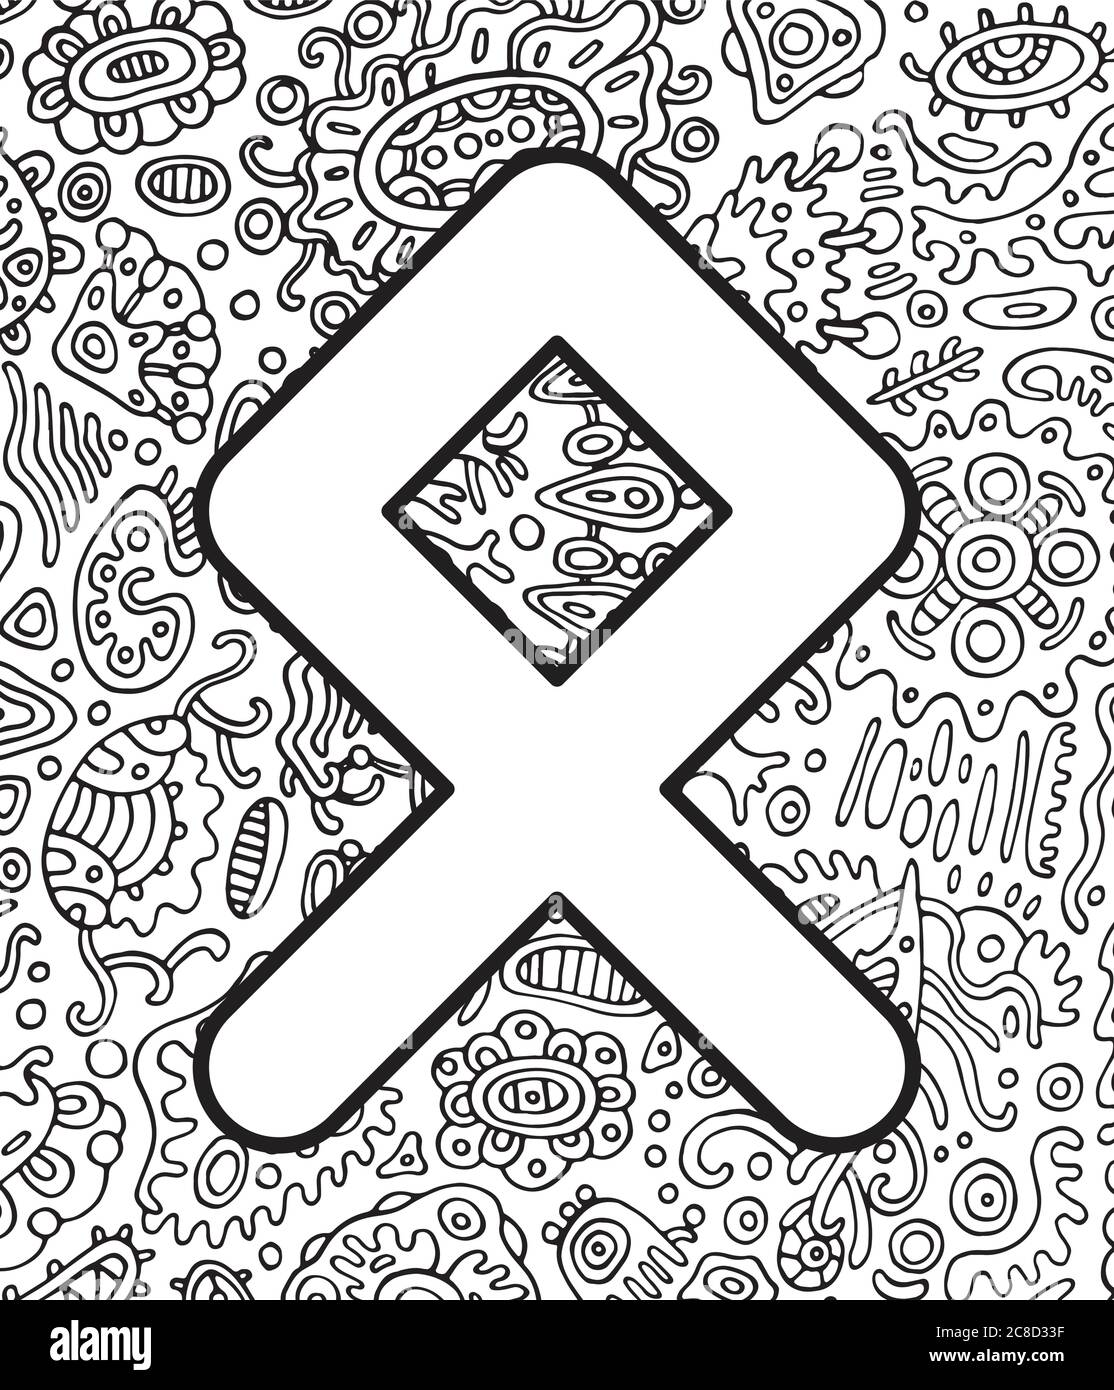 Alte skandinavische Rune othala mit Doodle Ornament Hintergrund. Malseite für Erwachsene. Psychedelisch fantastische mystische Kunstwerke. Vektorgrafik Stock Vektor